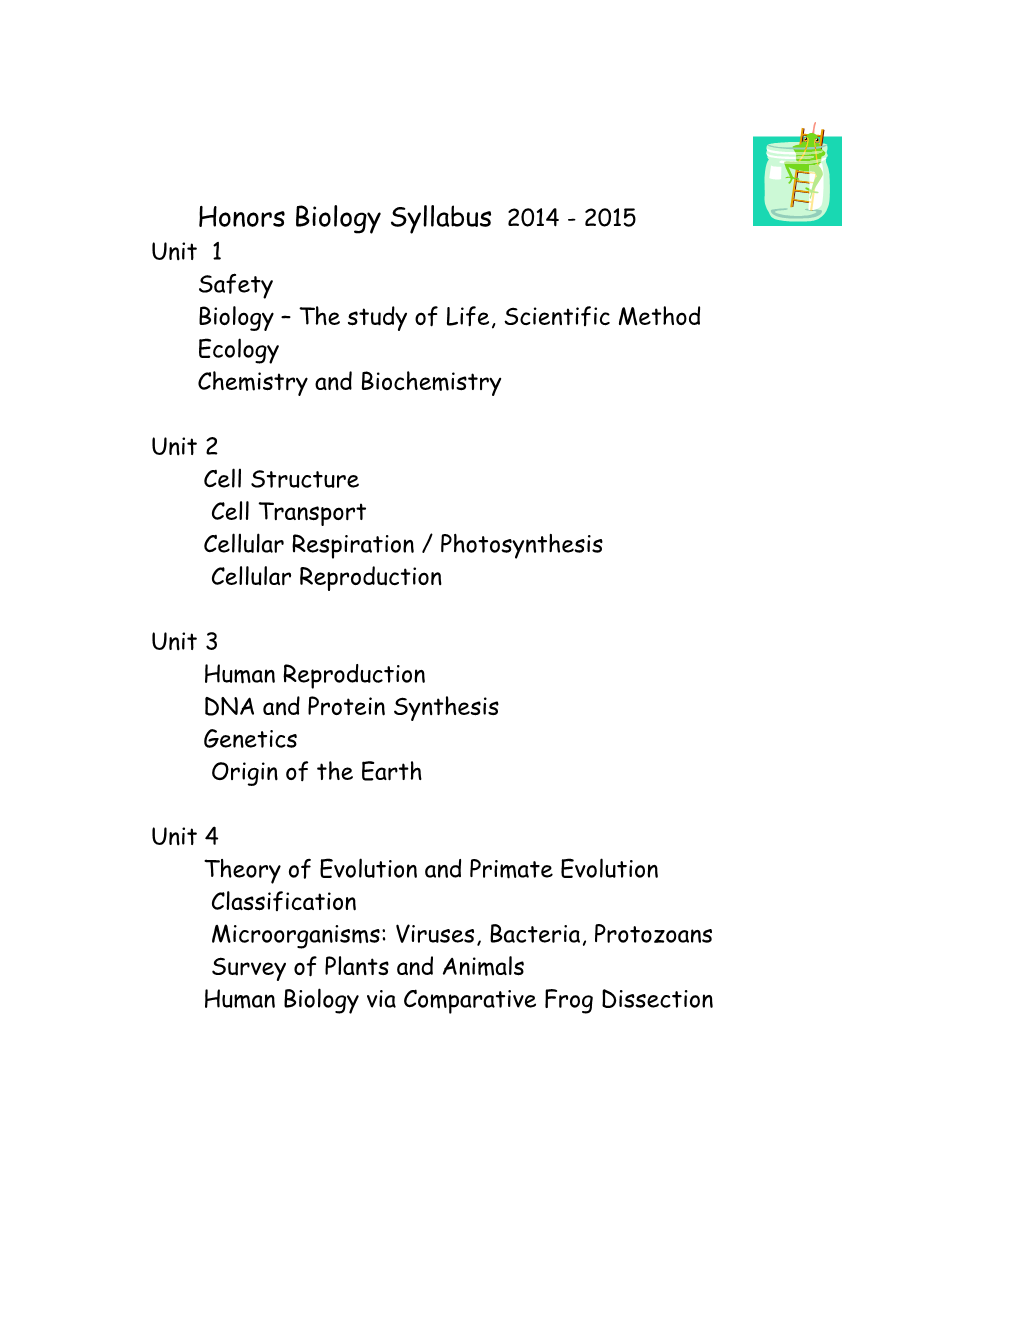 HB Biology Syllabus s1